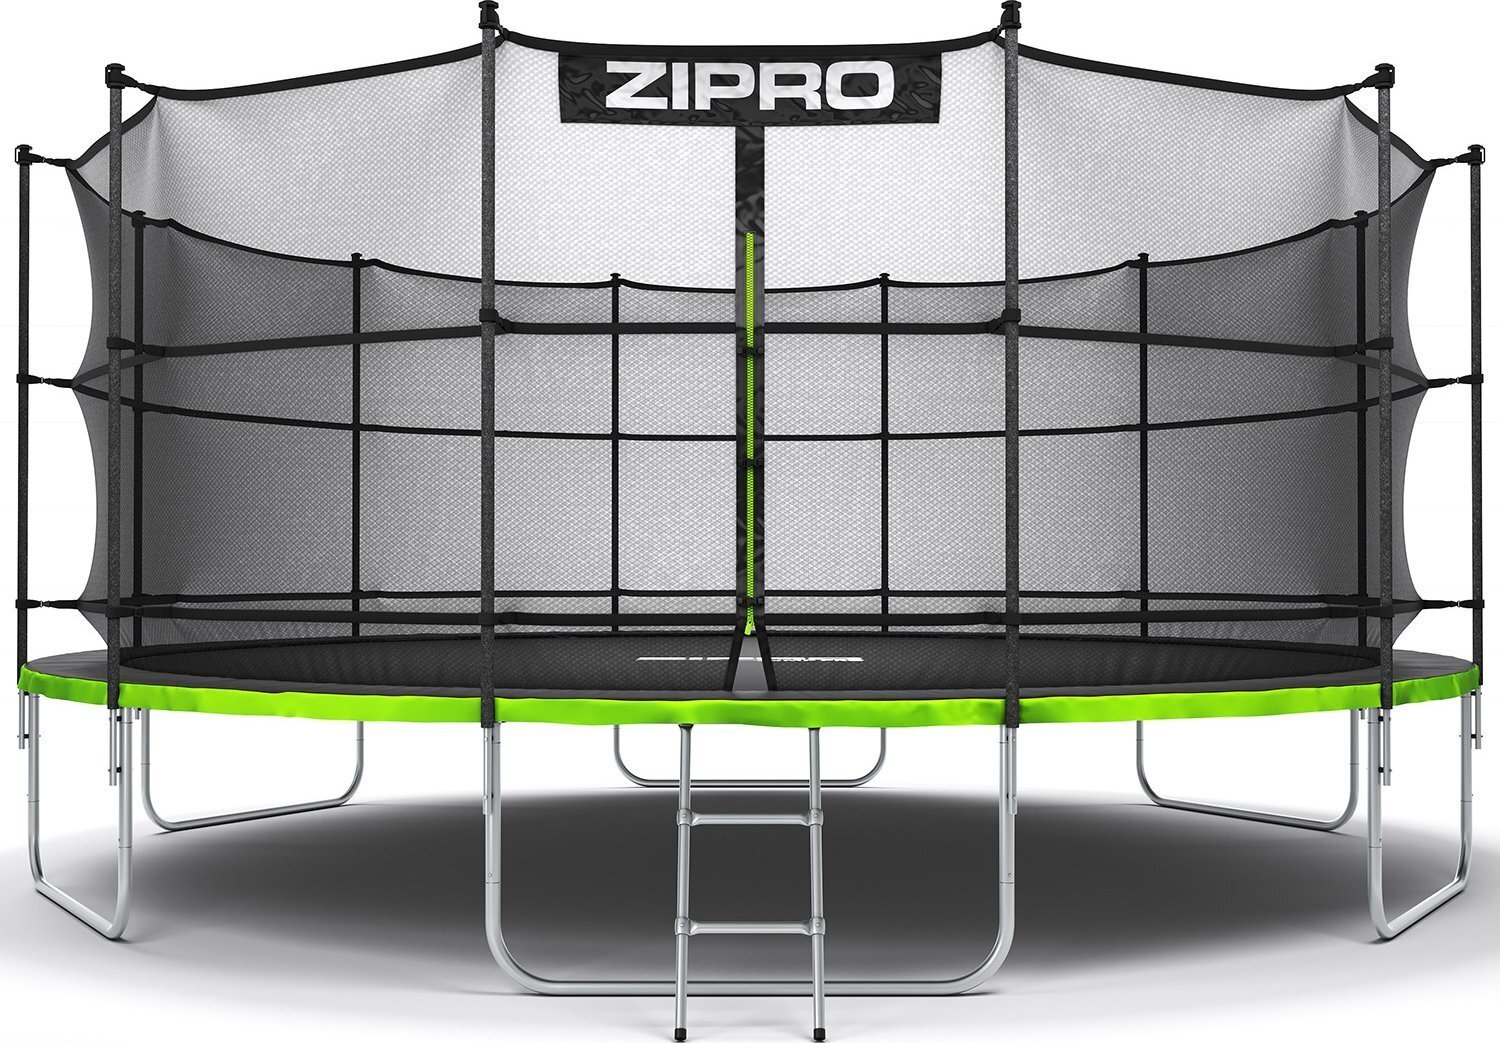 Zipro Jump Pro záhradná trampolína s vnútornou bezpečnostnou sieťou na topánky a rebríkom 16FT 496 cm